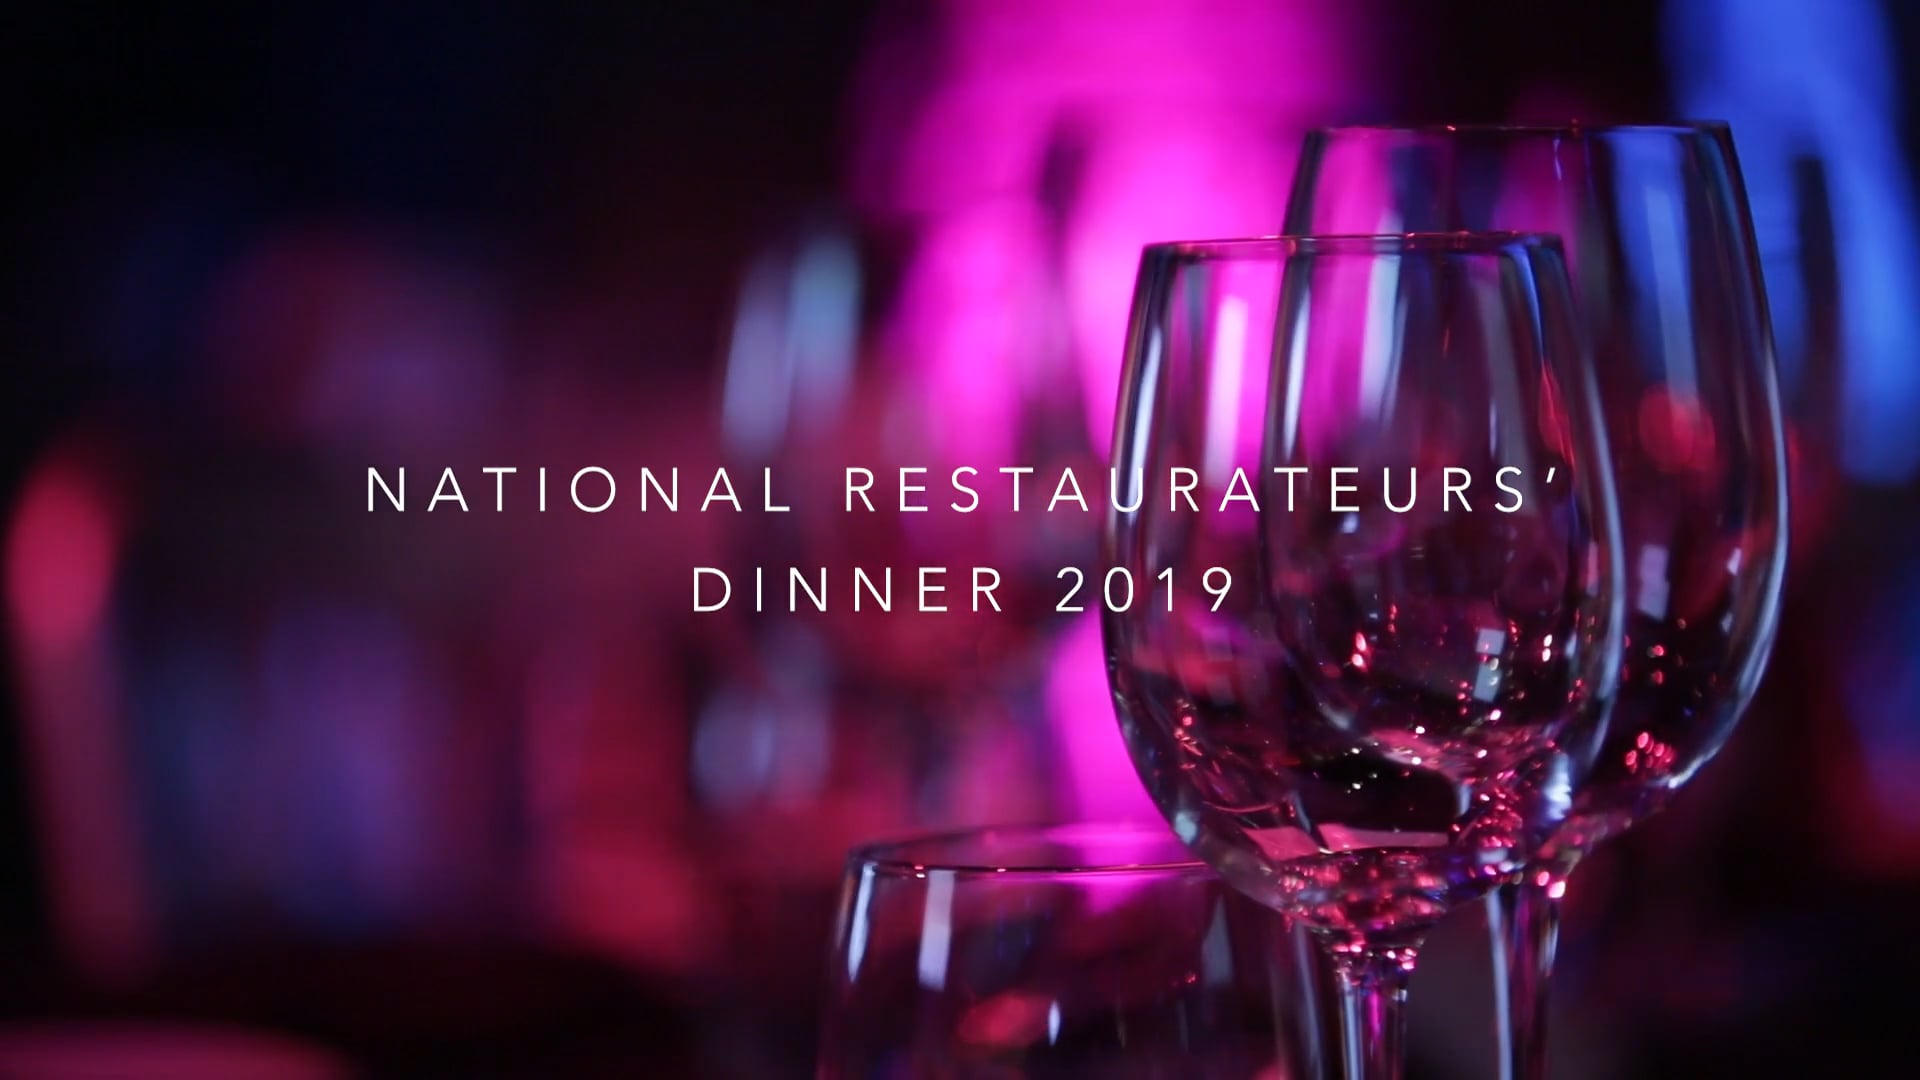 National Restaurateurs' Dinner 2019 | Highlight Video | Canon 5D